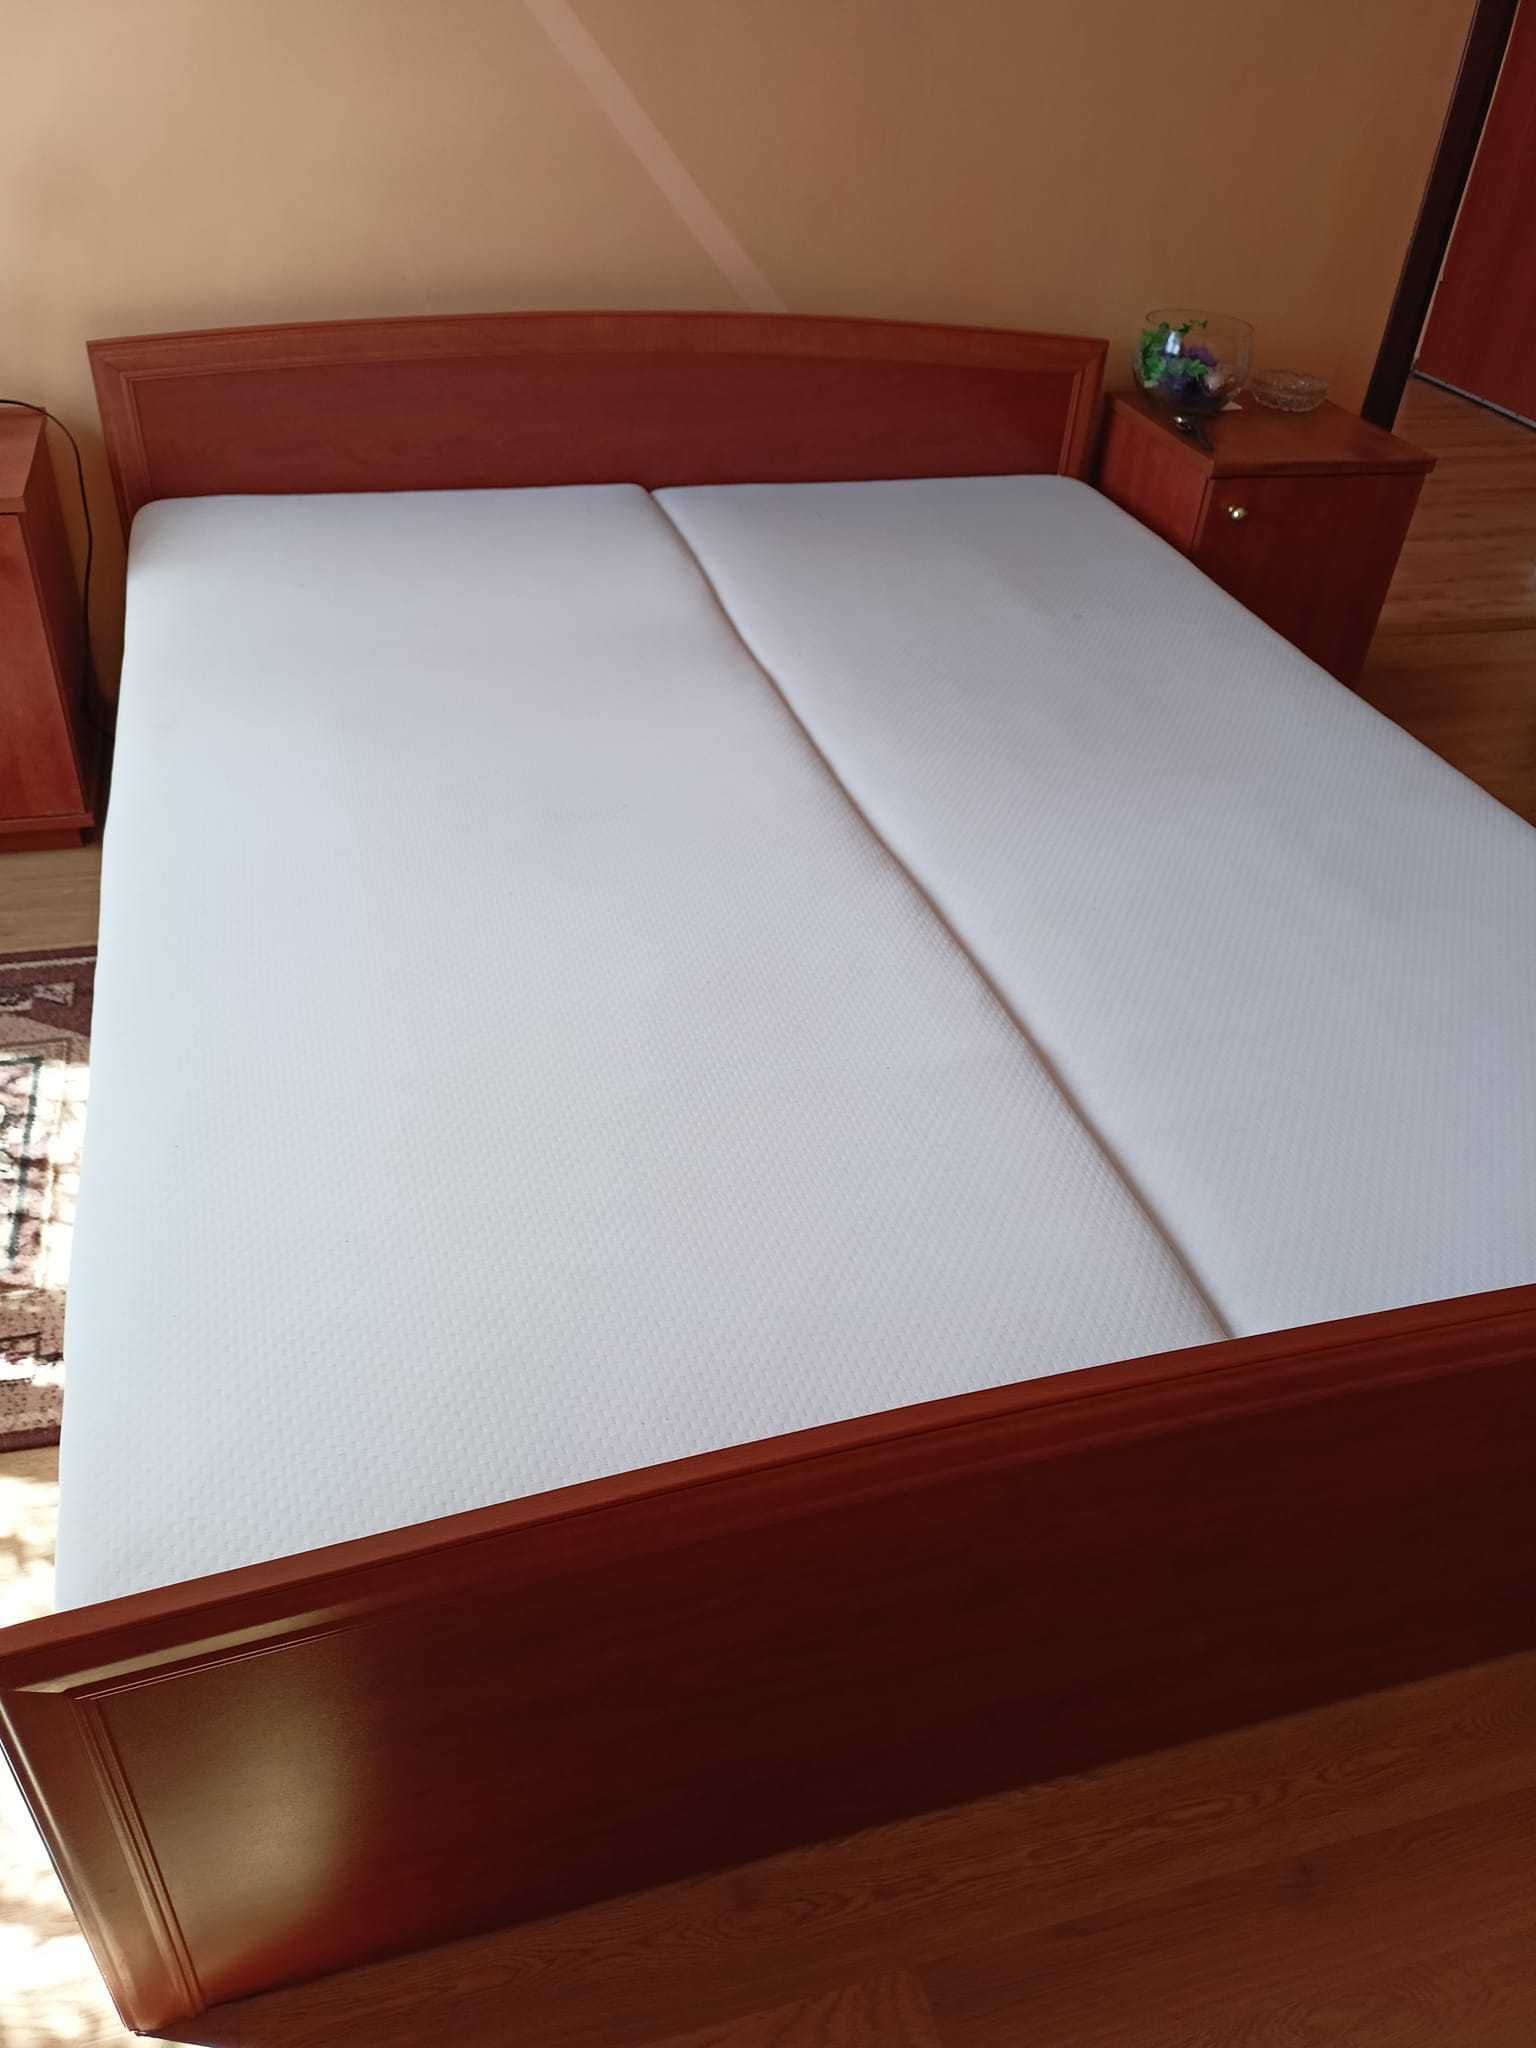 Łóżko o wymiarach (szer 165,dł 205,wys z materacem 40)